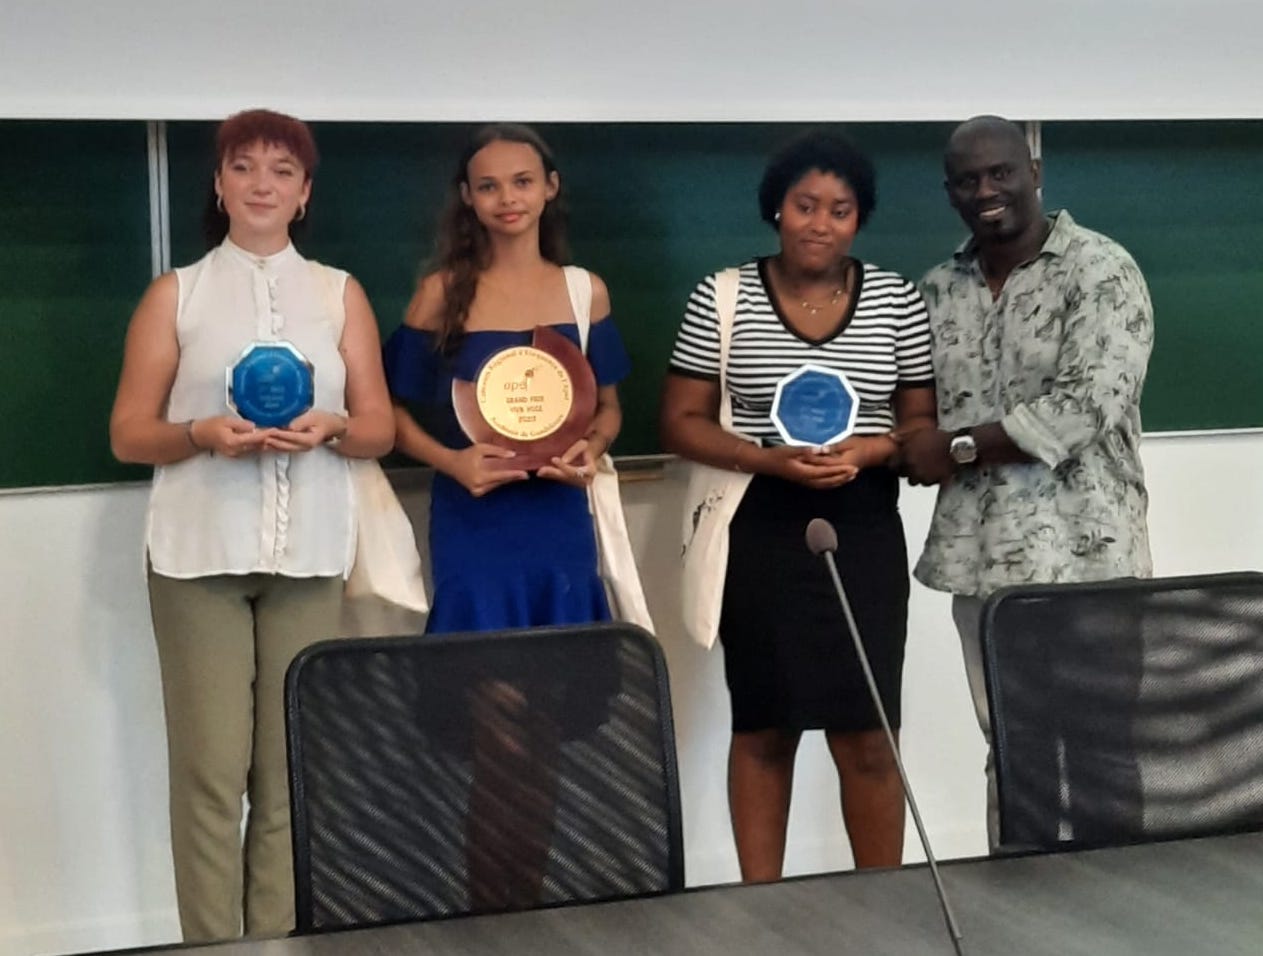     « L'envers du décor » du 1er concours d'éloquence de l'APEL Académie Guadeloupe

